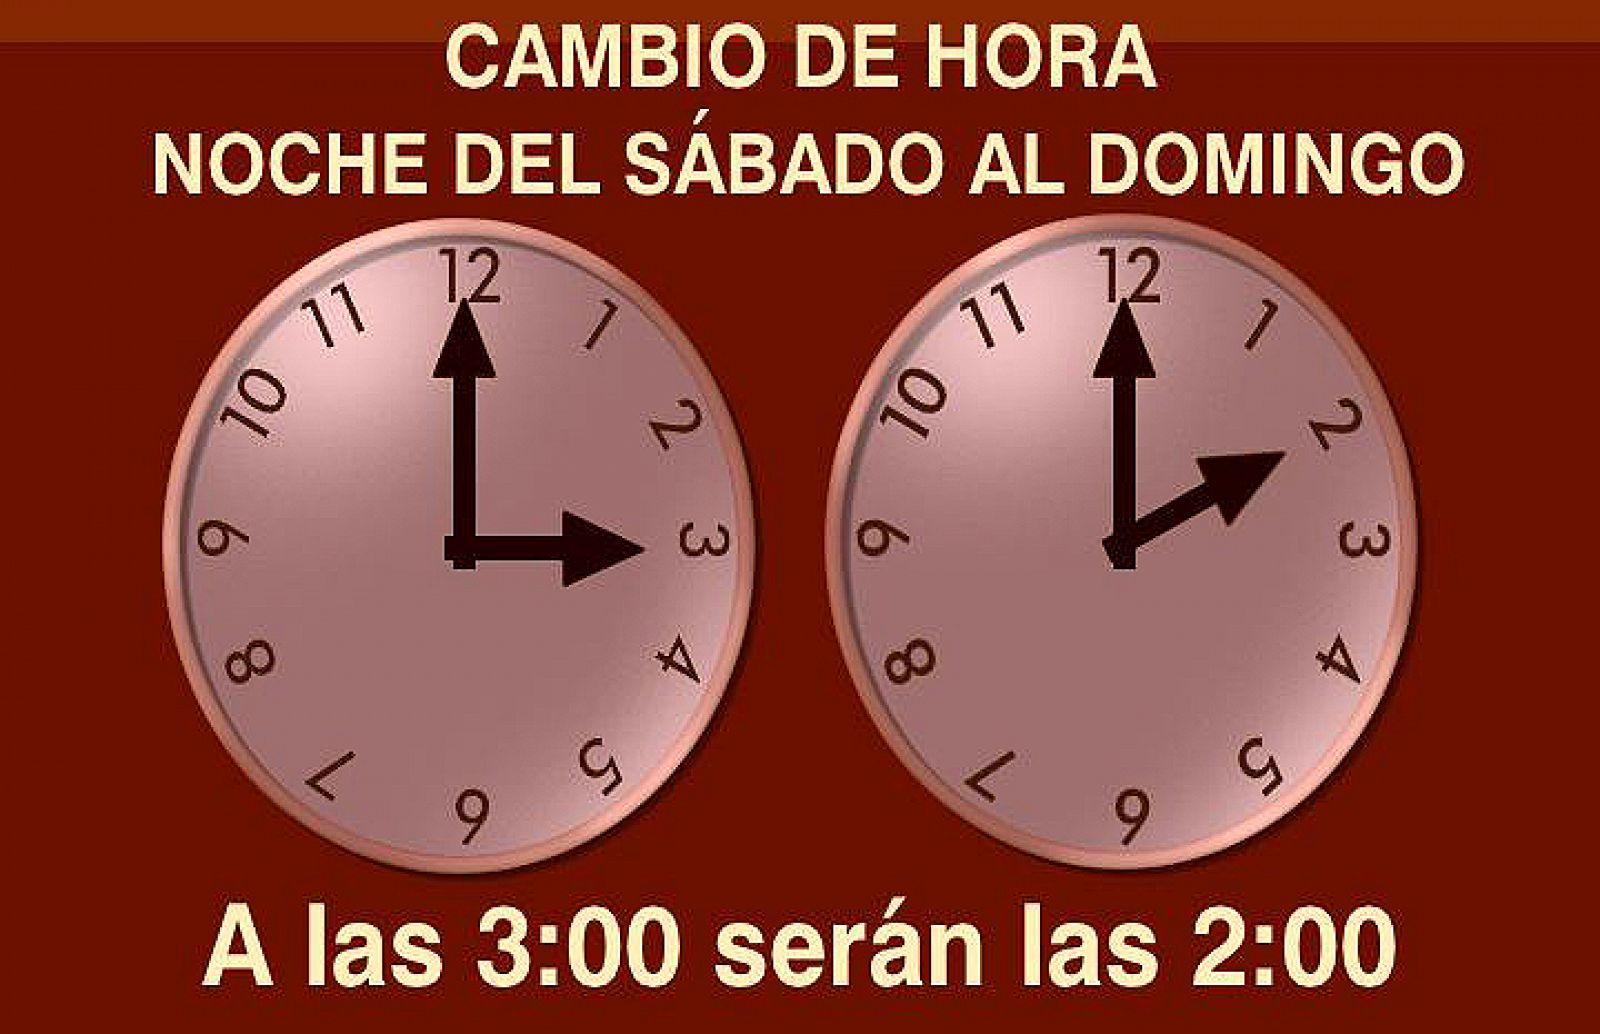 La noche del sábado al domingo cambia la hora de las 03.00 a las 02.00.